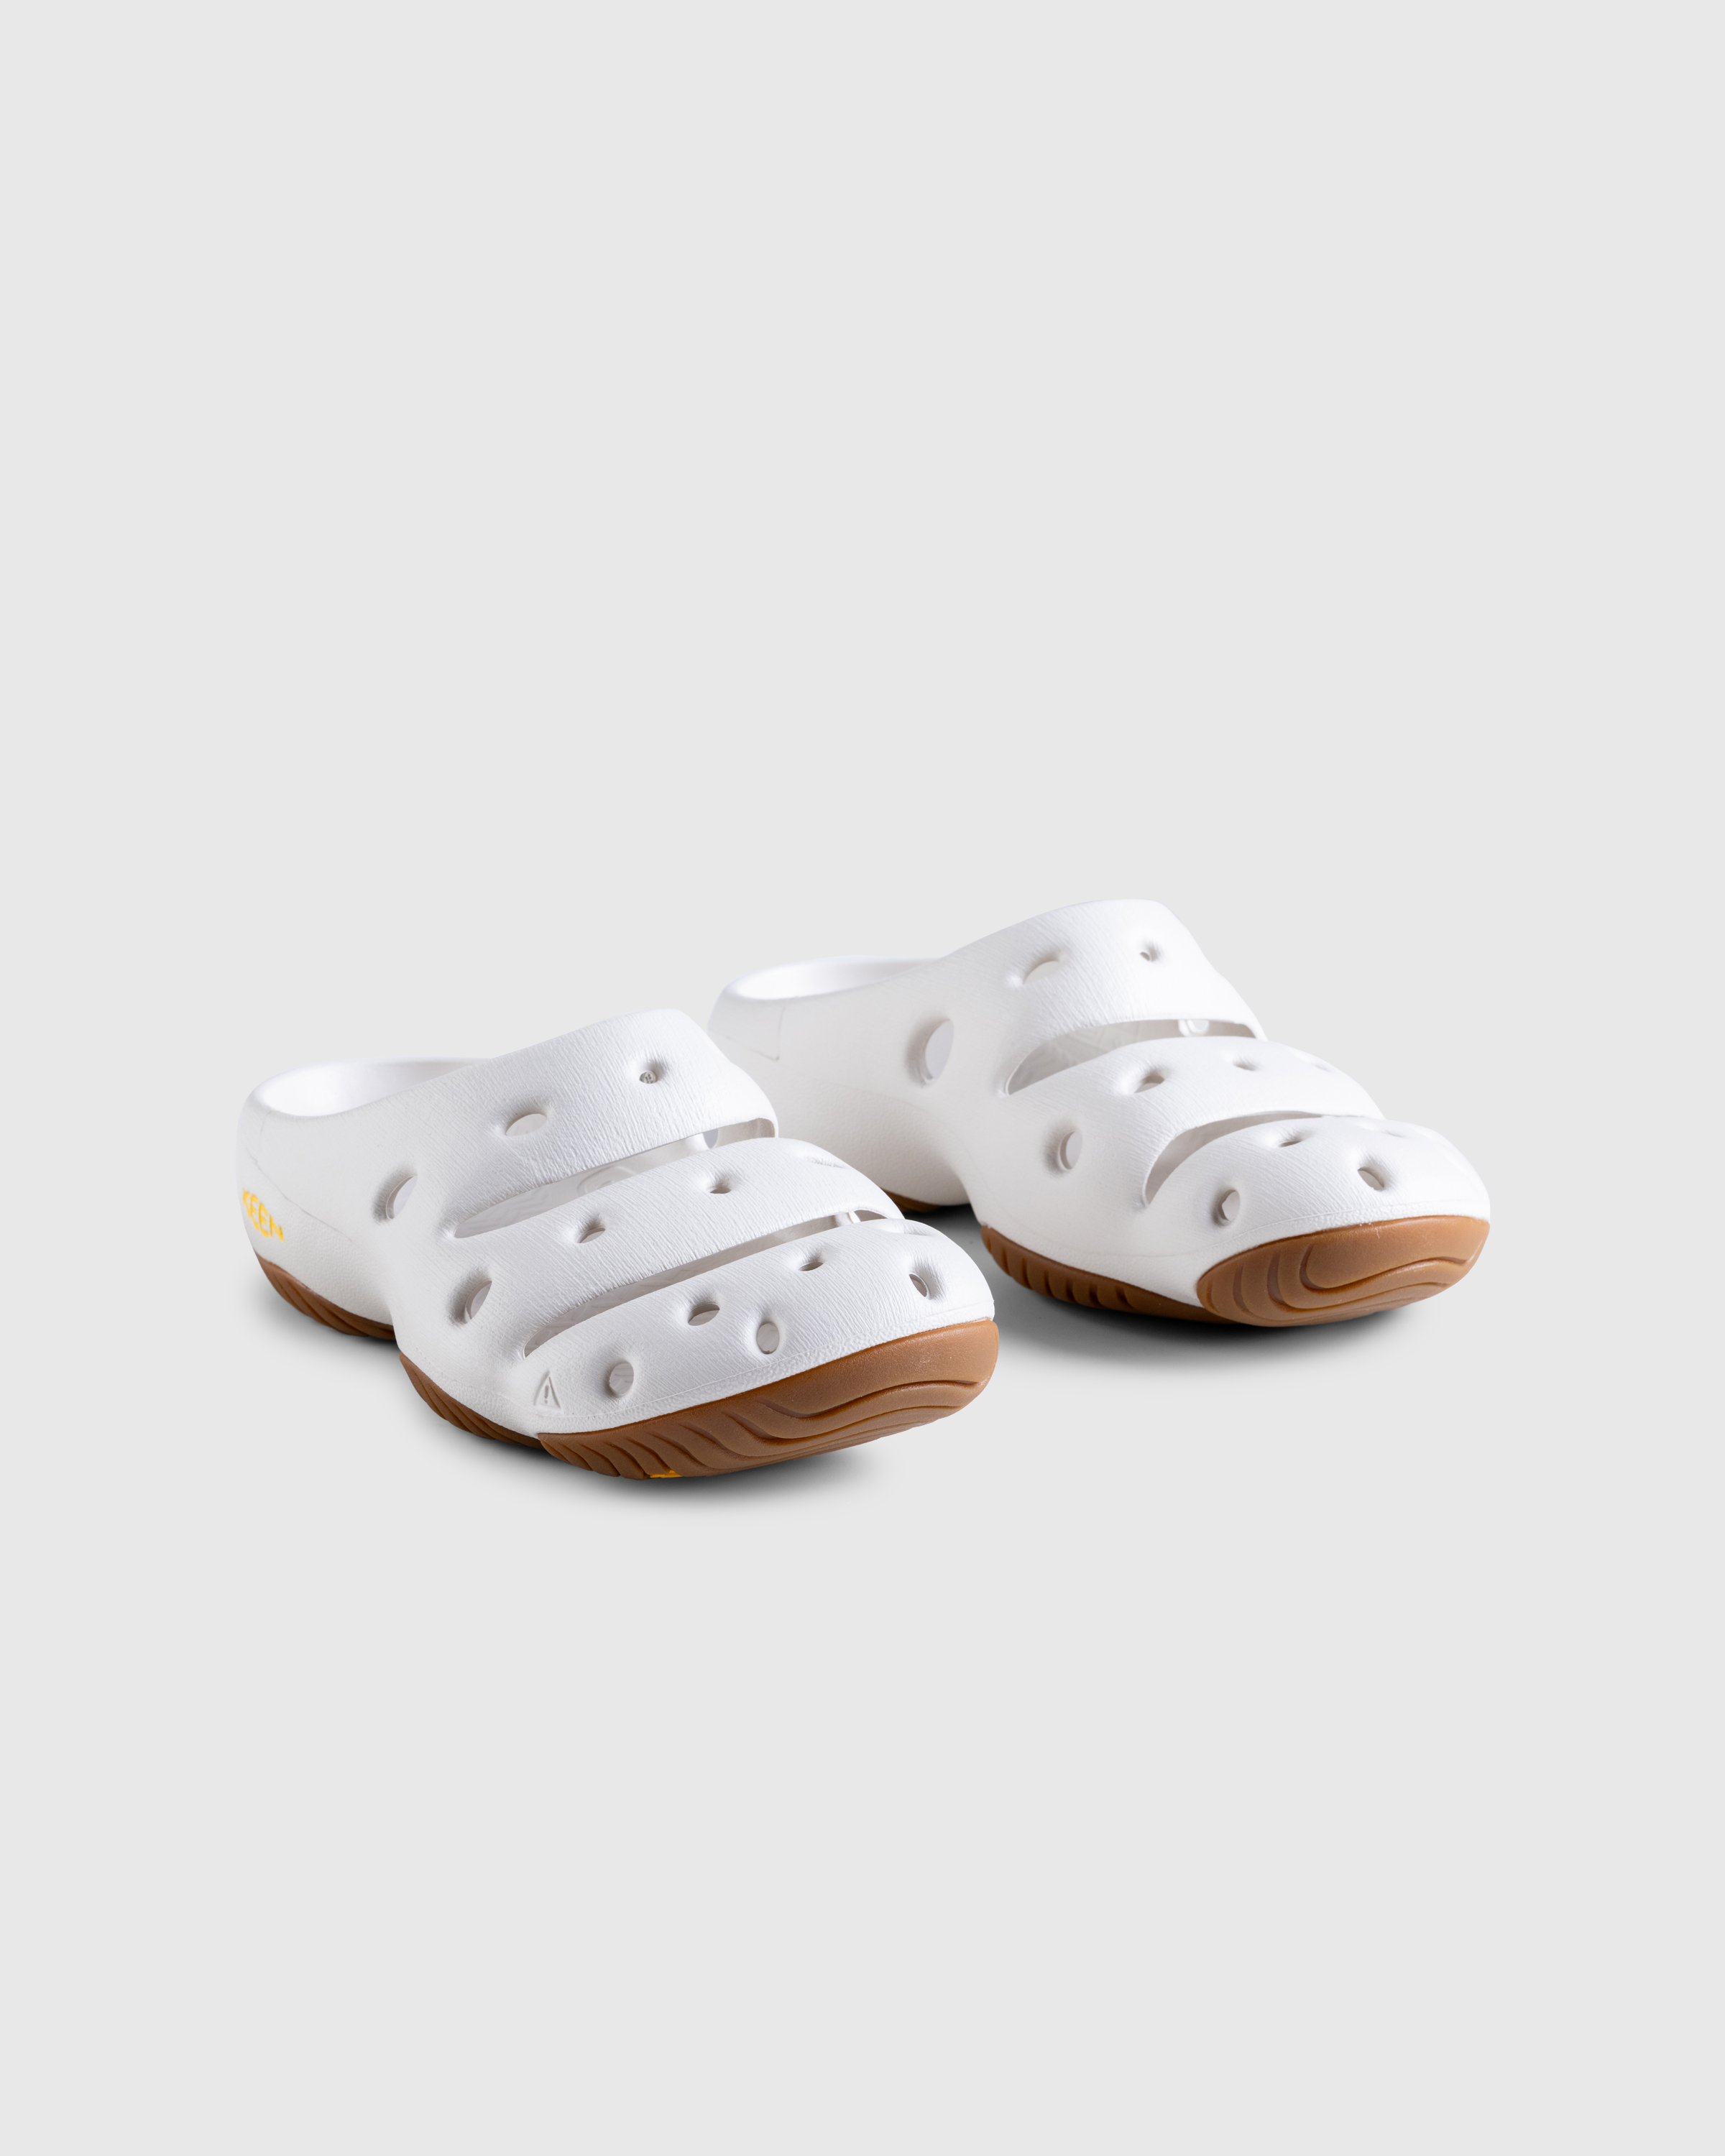 Keen – Yogui M Birch/Birch - Sandals - White - Image 3